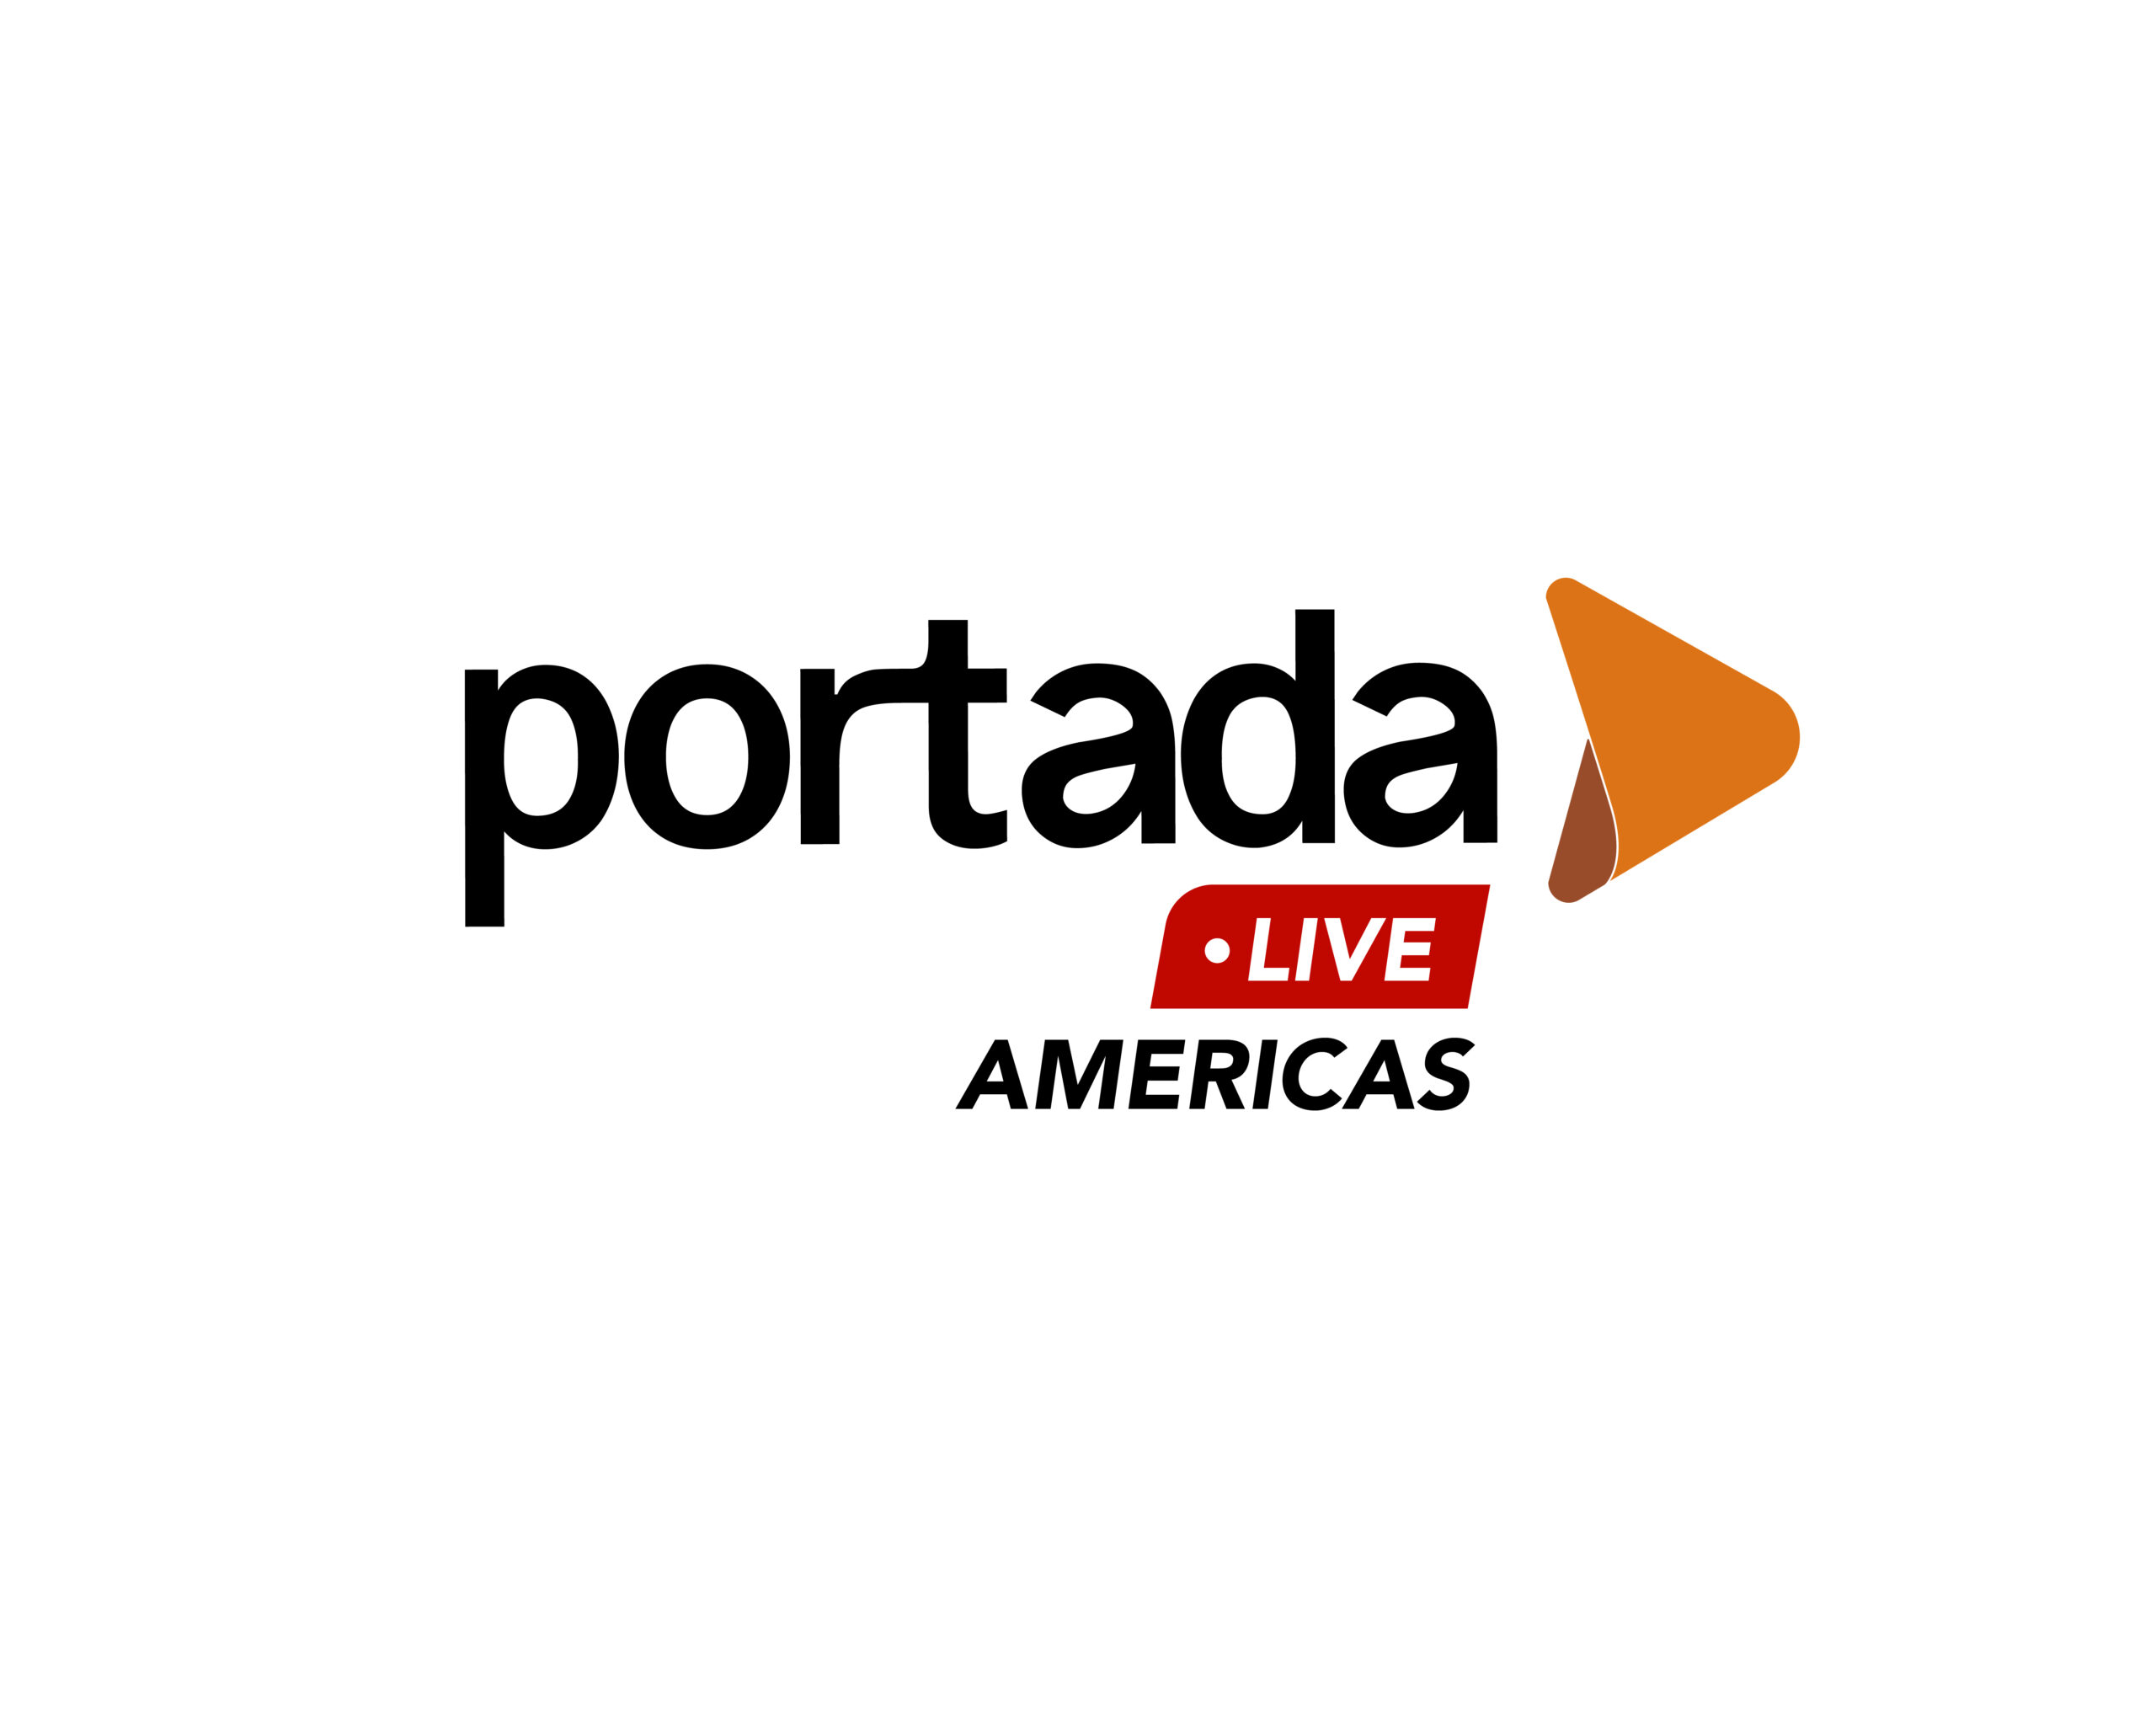 Portada Live Americas